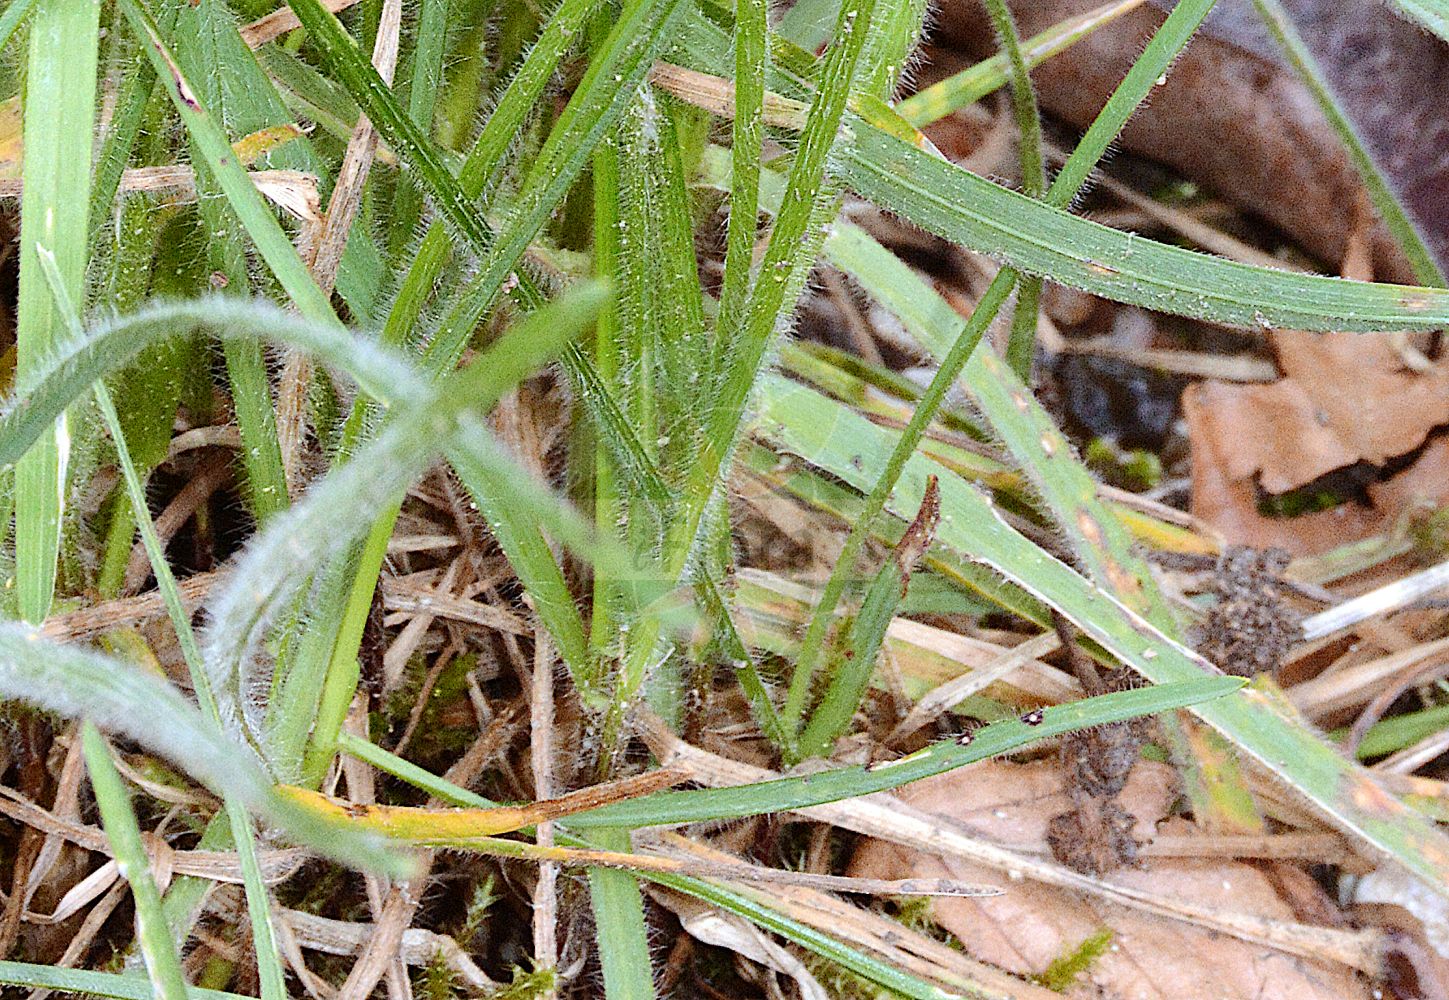 Foto von Avenula pubescens (Flaumiger Wiesenhafer - Downy Oat-grass). Das Foto wurde in München, Bayern, Deutschland aufgenommen. ---- Photo of Avenula pubescens (Flaumiger Wiesenhafer - Downy Oat-grass). The picture was taken in Munich, Bavaria, Germany.(Avenula pubescens,Flaumiger Wiesenhafer,Downy Oat-grass,Arrhenatherum pubescens,Avena amethystina,Avena fallax,Avena lucida,Avena pubescens,Avenastrum pubescens,Avenochloa pubescens,Avenula pubescens,Helictotrichon pubescens,Homalotrichon pubescens,Neoholubia pubescens,Flaumiger Wiesenhafer,Flaumhafer,Flaum-Wiesenhafer,Gewoehnlicher Flaumiger Wiesenhafer,Kahler Flaumhafer,Downy Oat-grass,Downy Alpine Oatgrass,Hairy Oatgrass,Avenula,Poaceae,Süßgräser,Grass family)